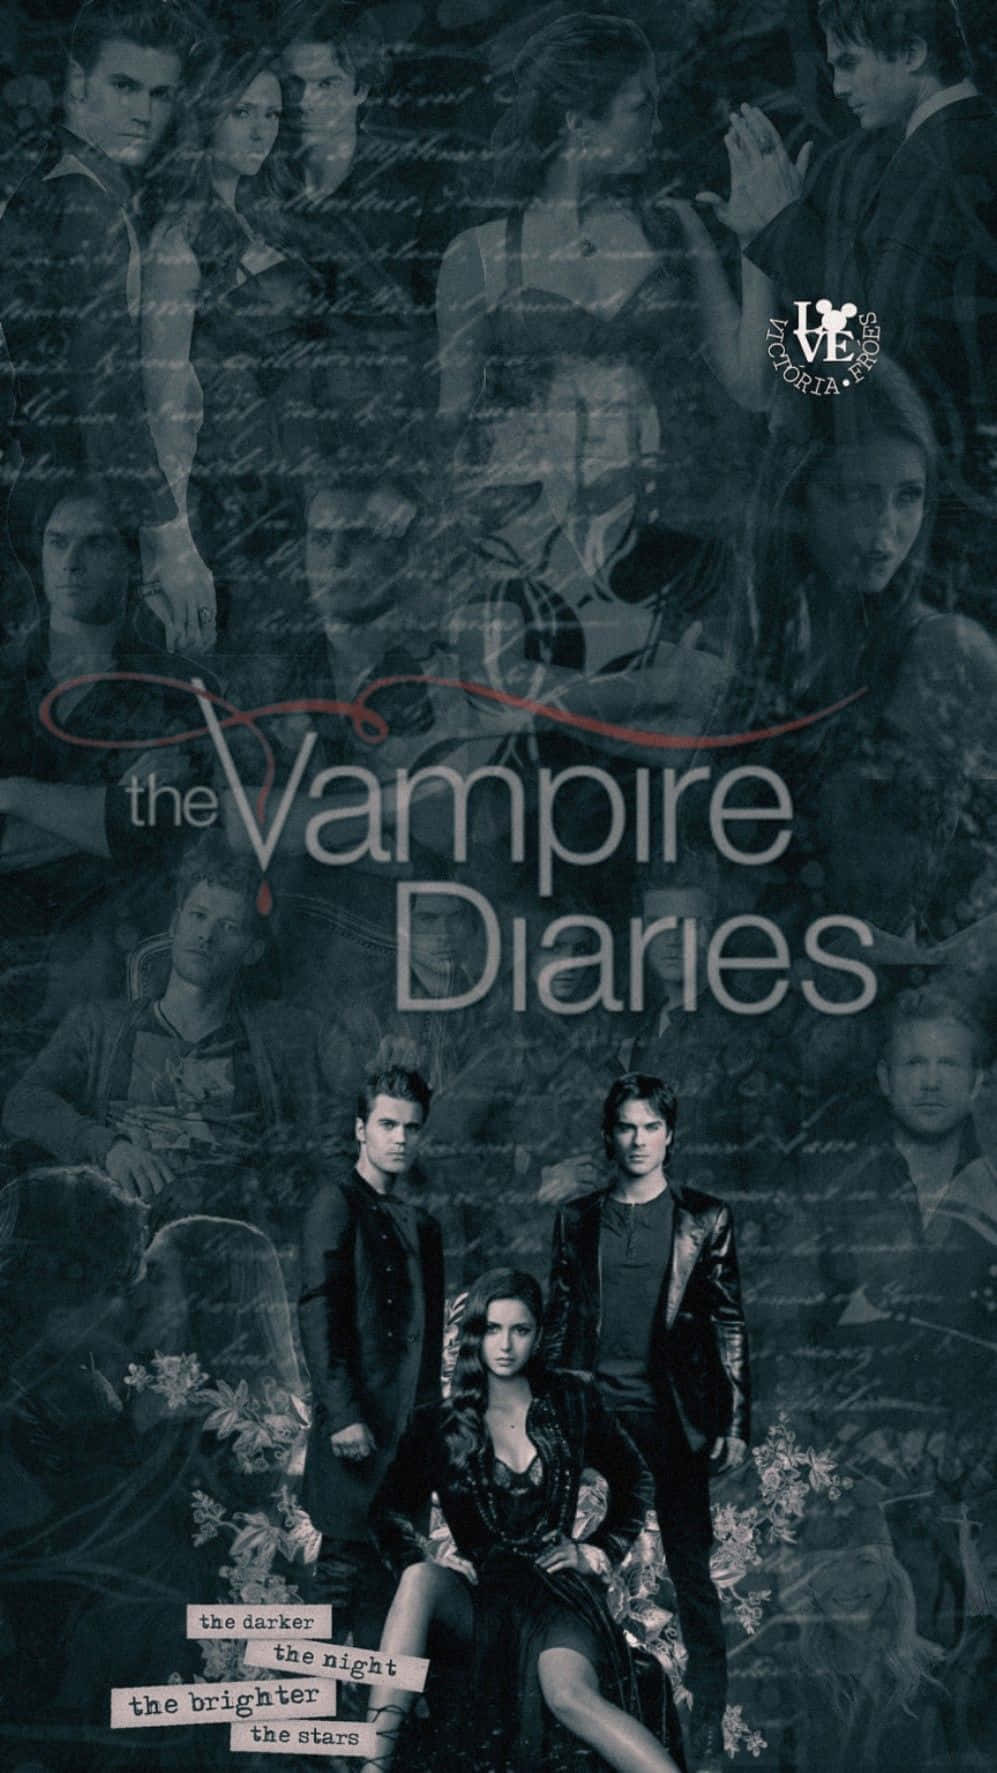 The vampire diaries poster - Vampire